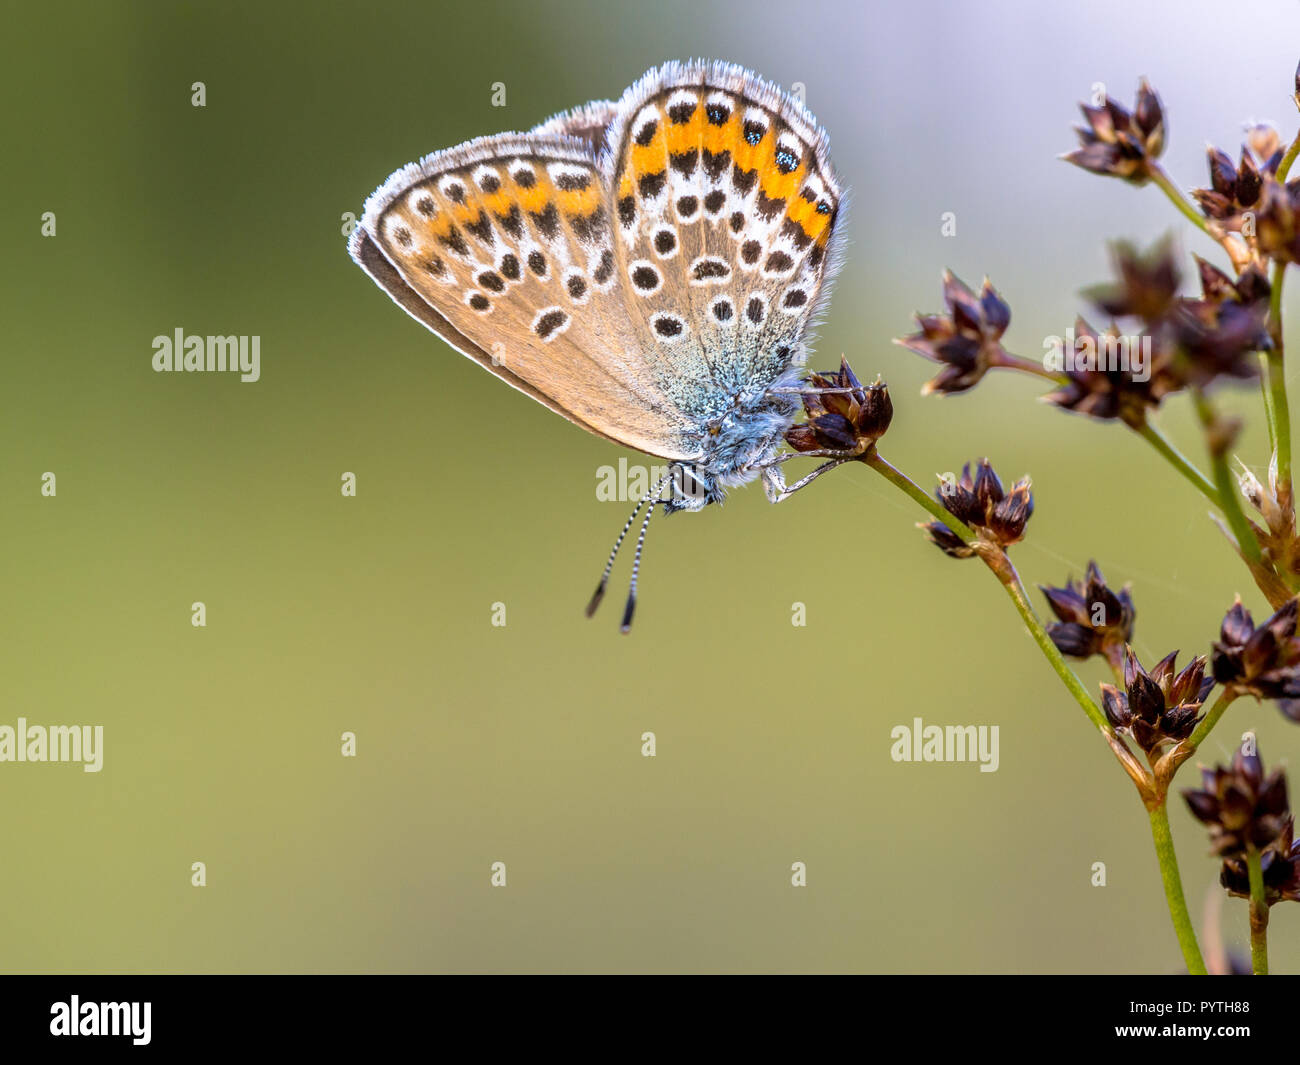 Hembra con clavos de plata (azul Plebejus argus) butterfly descansando o durmiendo en flor afilados Rush (Juncus acutiflorus) en su hábitat natural Foto de stock